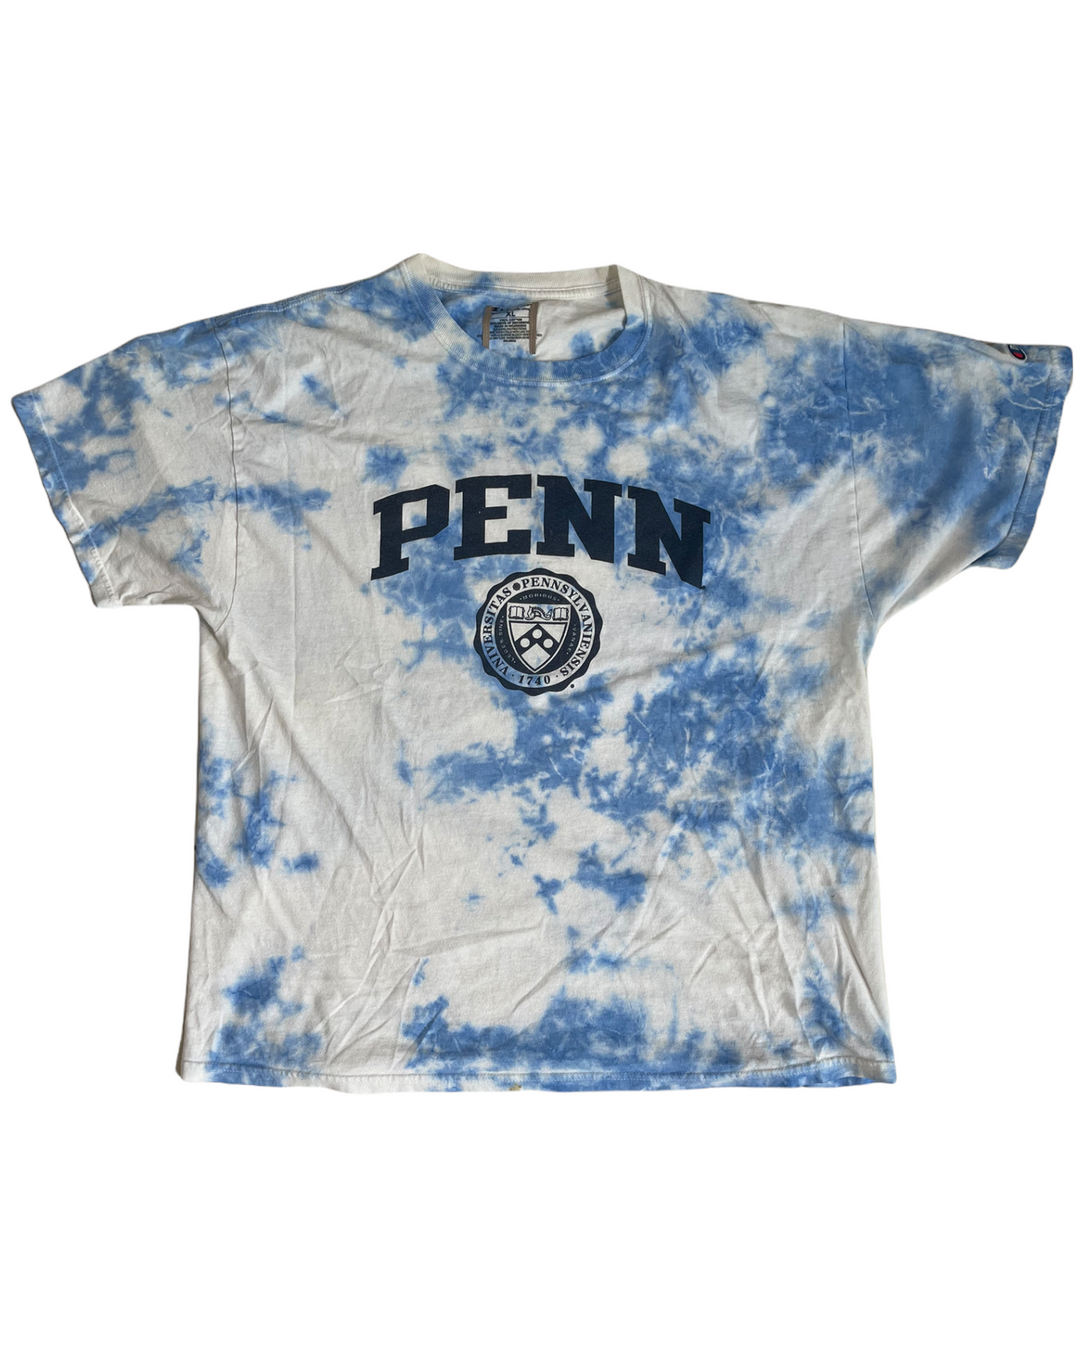 UPenn Tie Dye Vintage T-Shirt